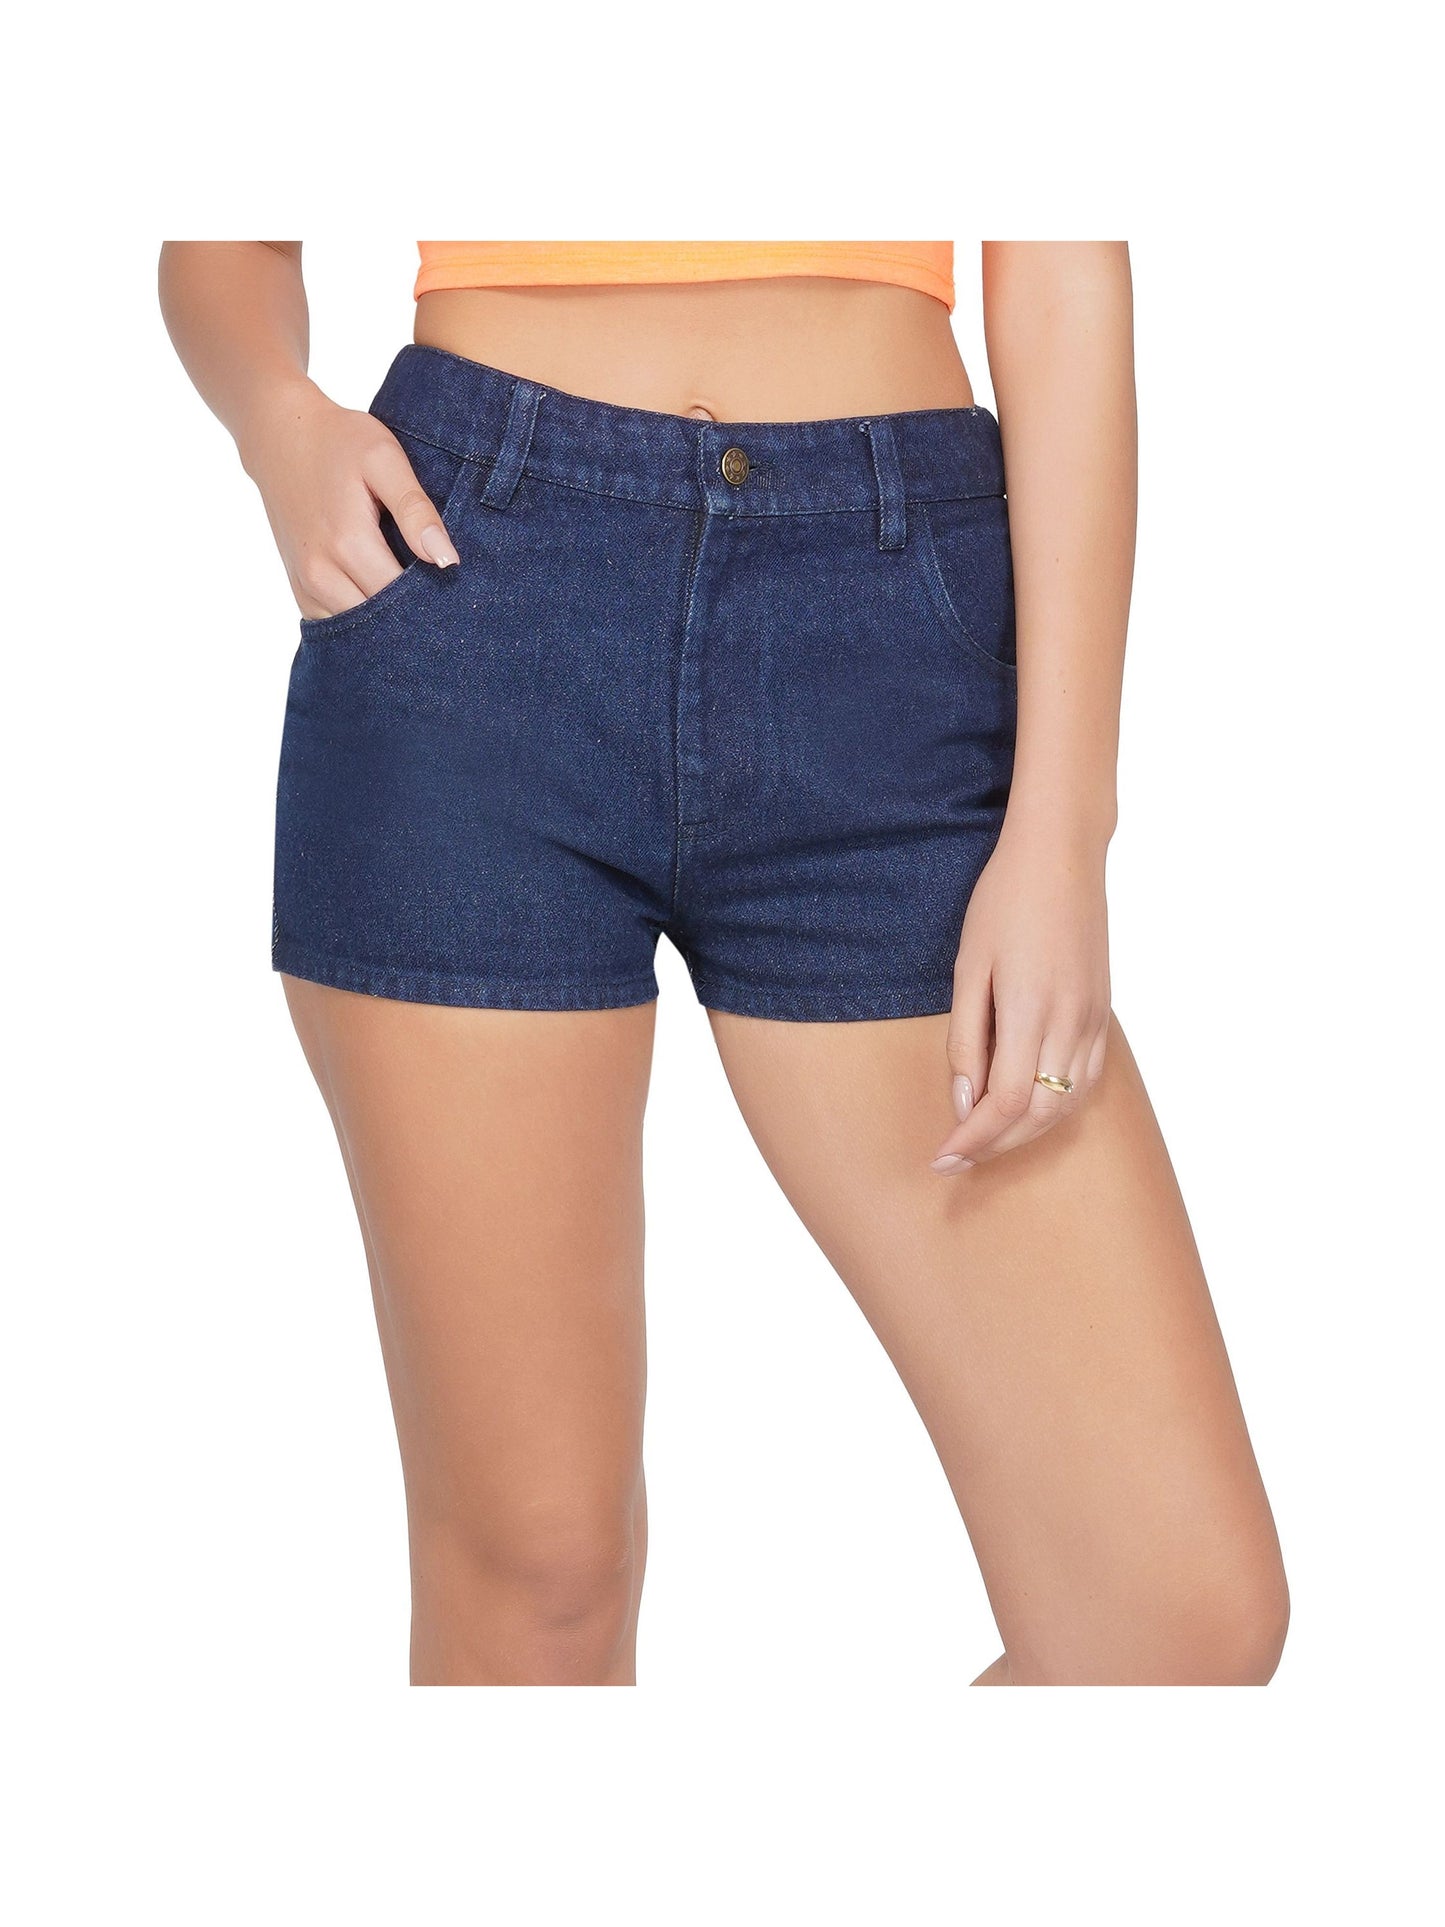 SLAY. Women's Straight Leg Shorts-clothing-to-slay.myshopify.com-Denim Short